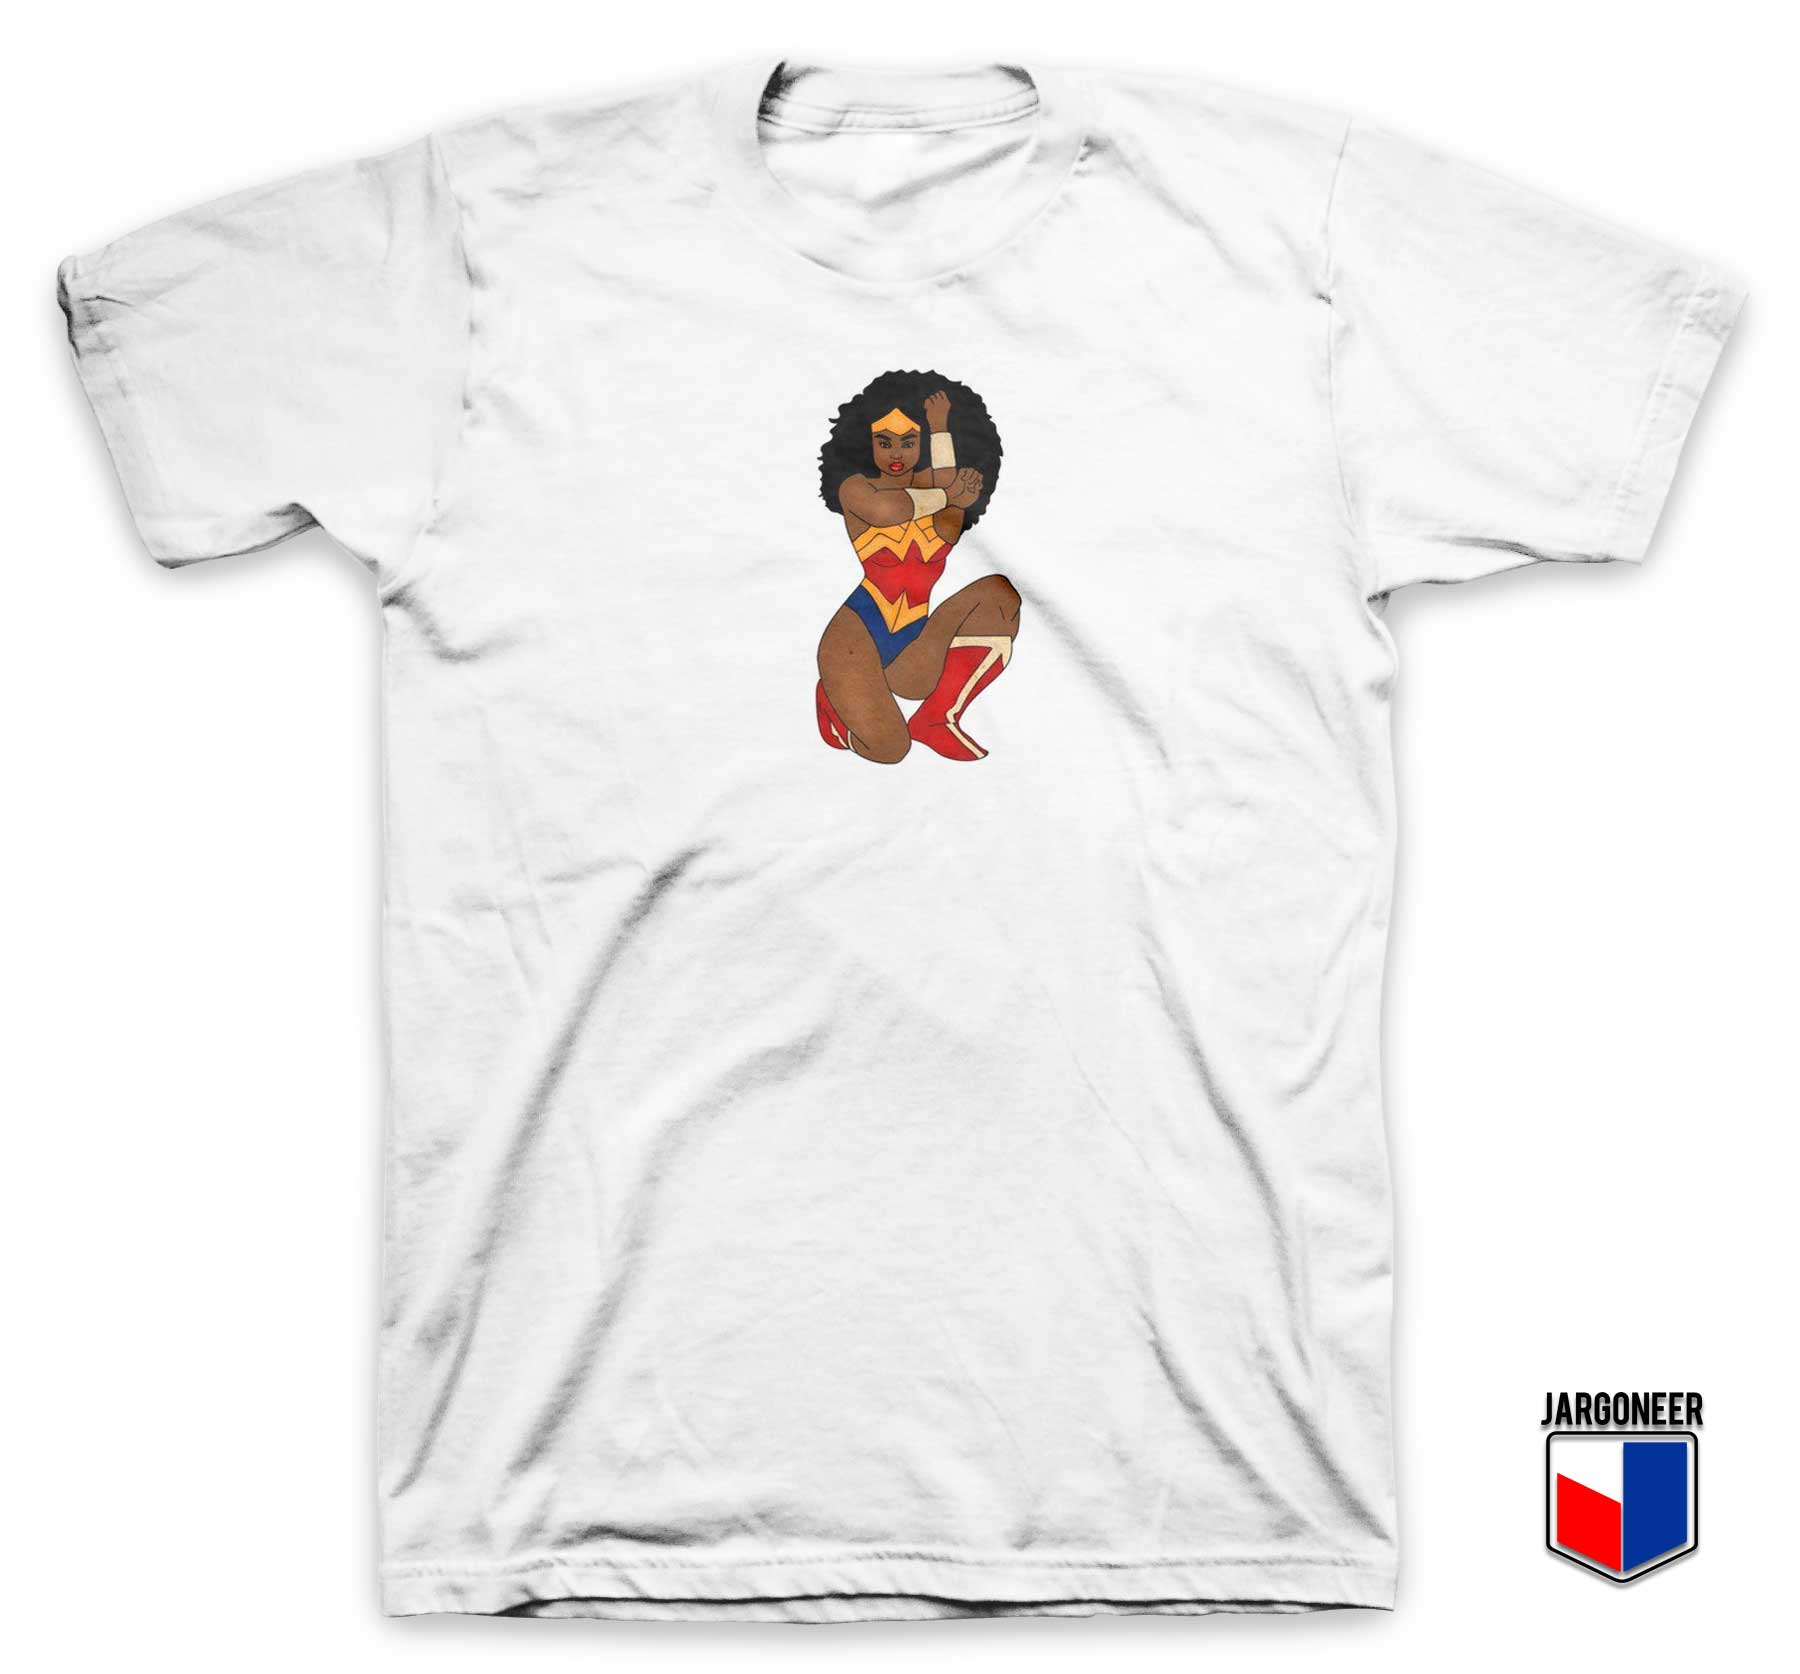 Superhero Black Wonder Woman T Shirt - Shop Unique Graphic Cool Shirt Designs